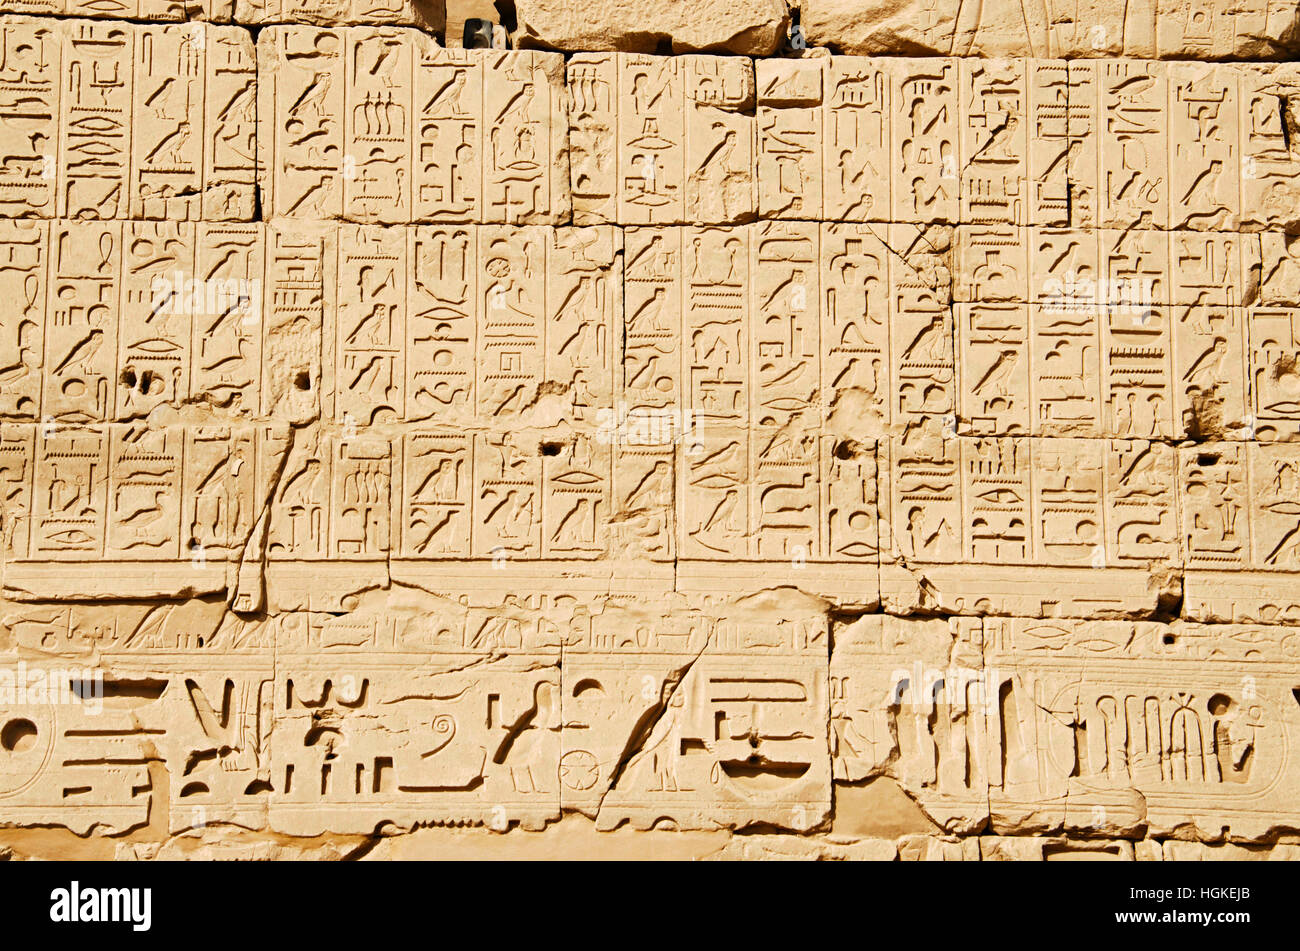 Detalles de talla, vista al interior, el templo de Karnak, compleja mezcla de dientes cariados templos, capillas, torres y otros edificios, Luxor, Egipto Foto de stock